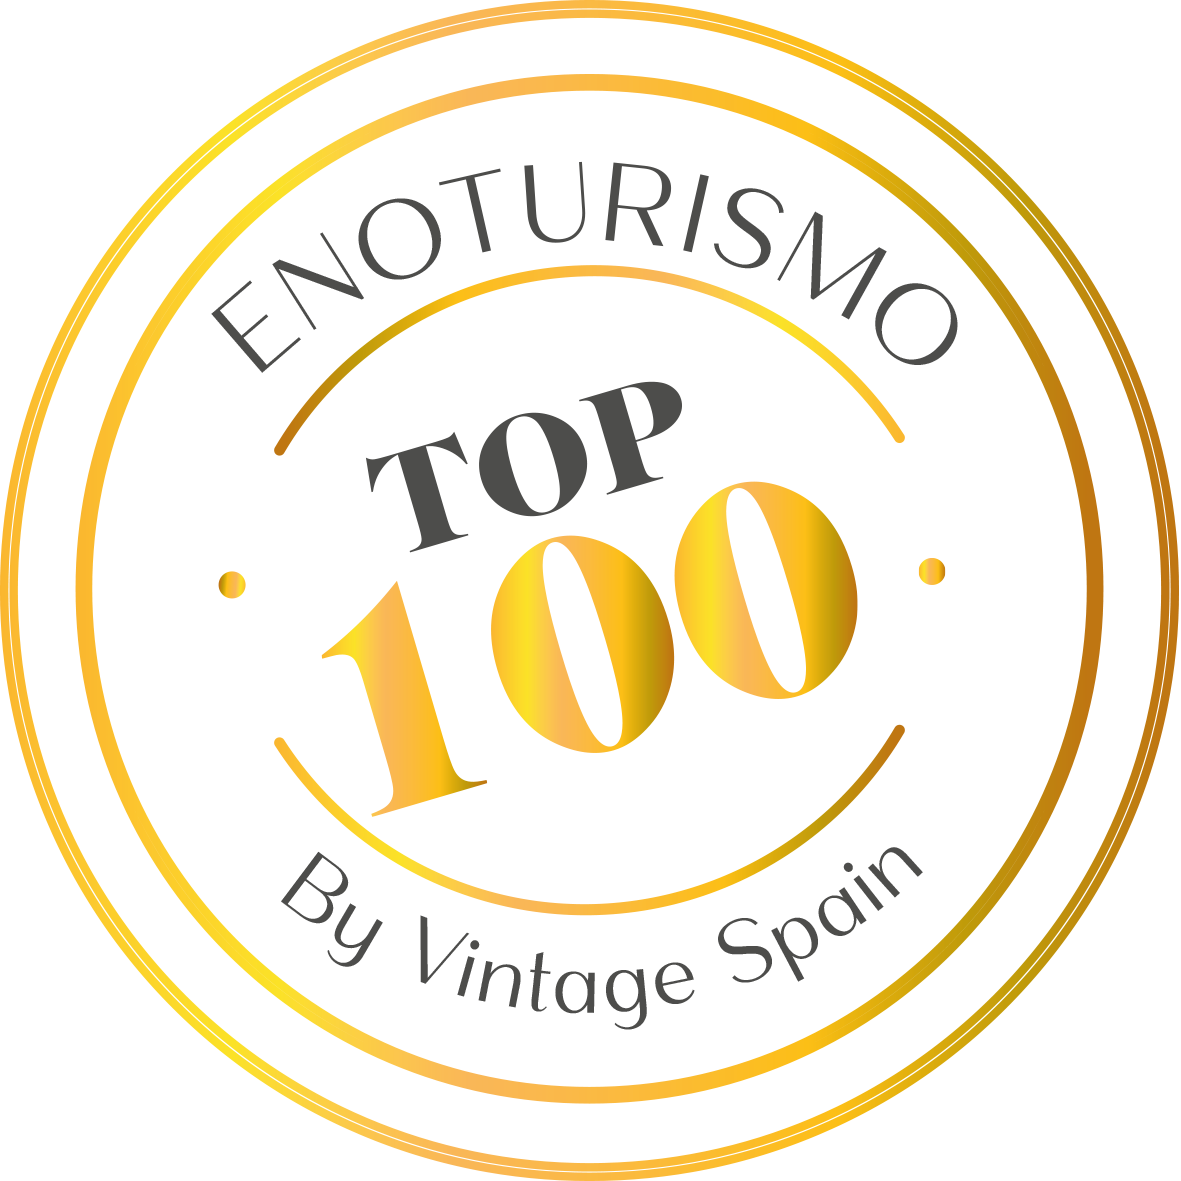 TOP100 Enoturismo Spain